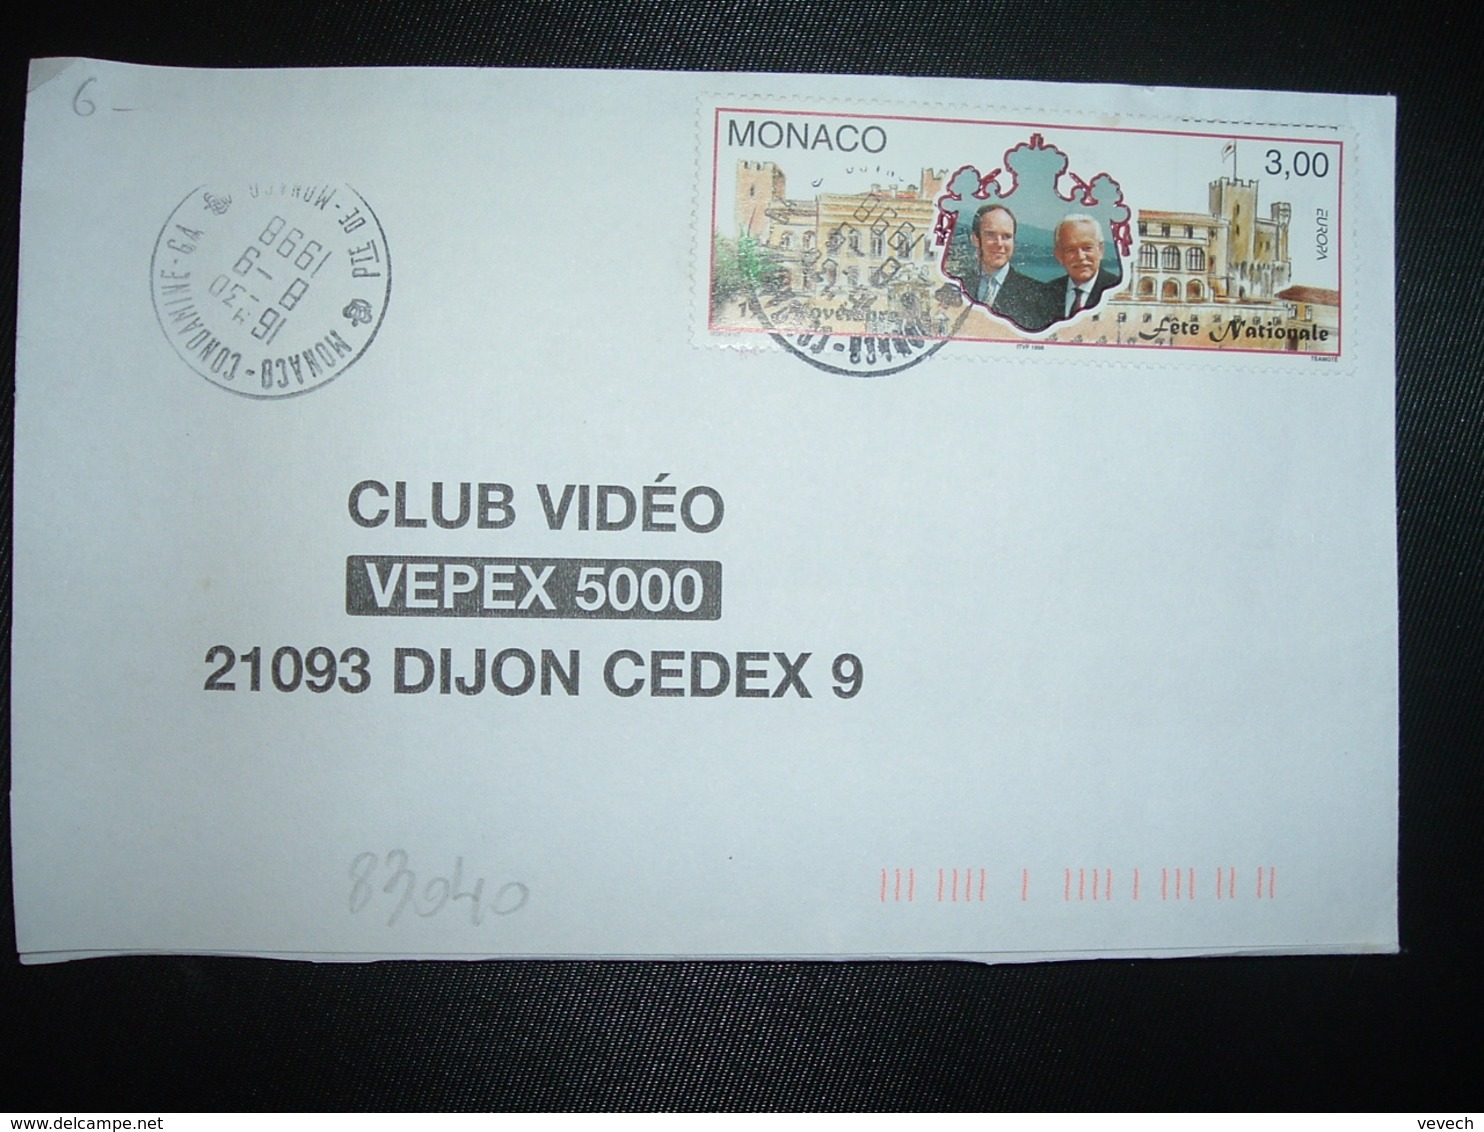 LETTRE TP EUROPA FETE NATIONALE 3,00 OBL.8-9 1998 MONACO CONDAMINE GA (GUICHET ANNEXE) - Briefe U. Dokumente